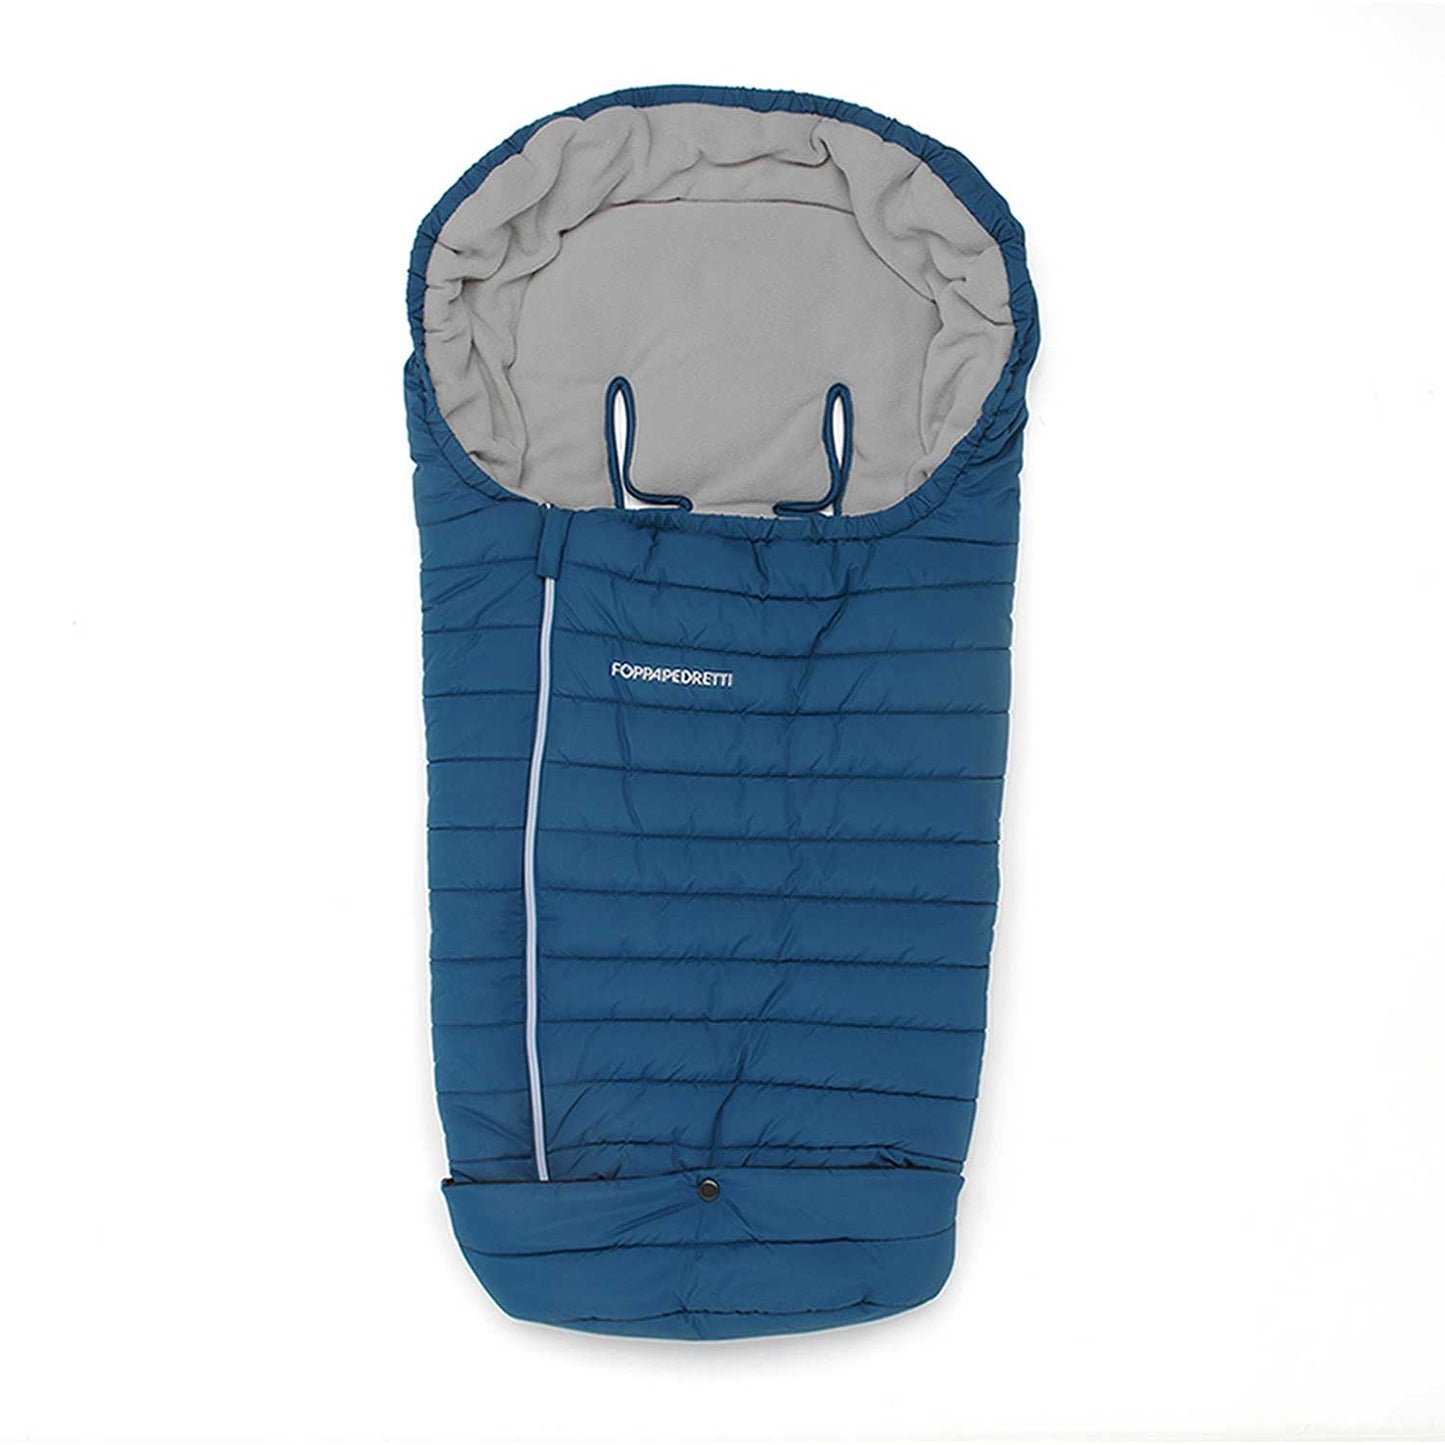 Foppapedretti - Thermal sleeping bag for TECHNIC stroller